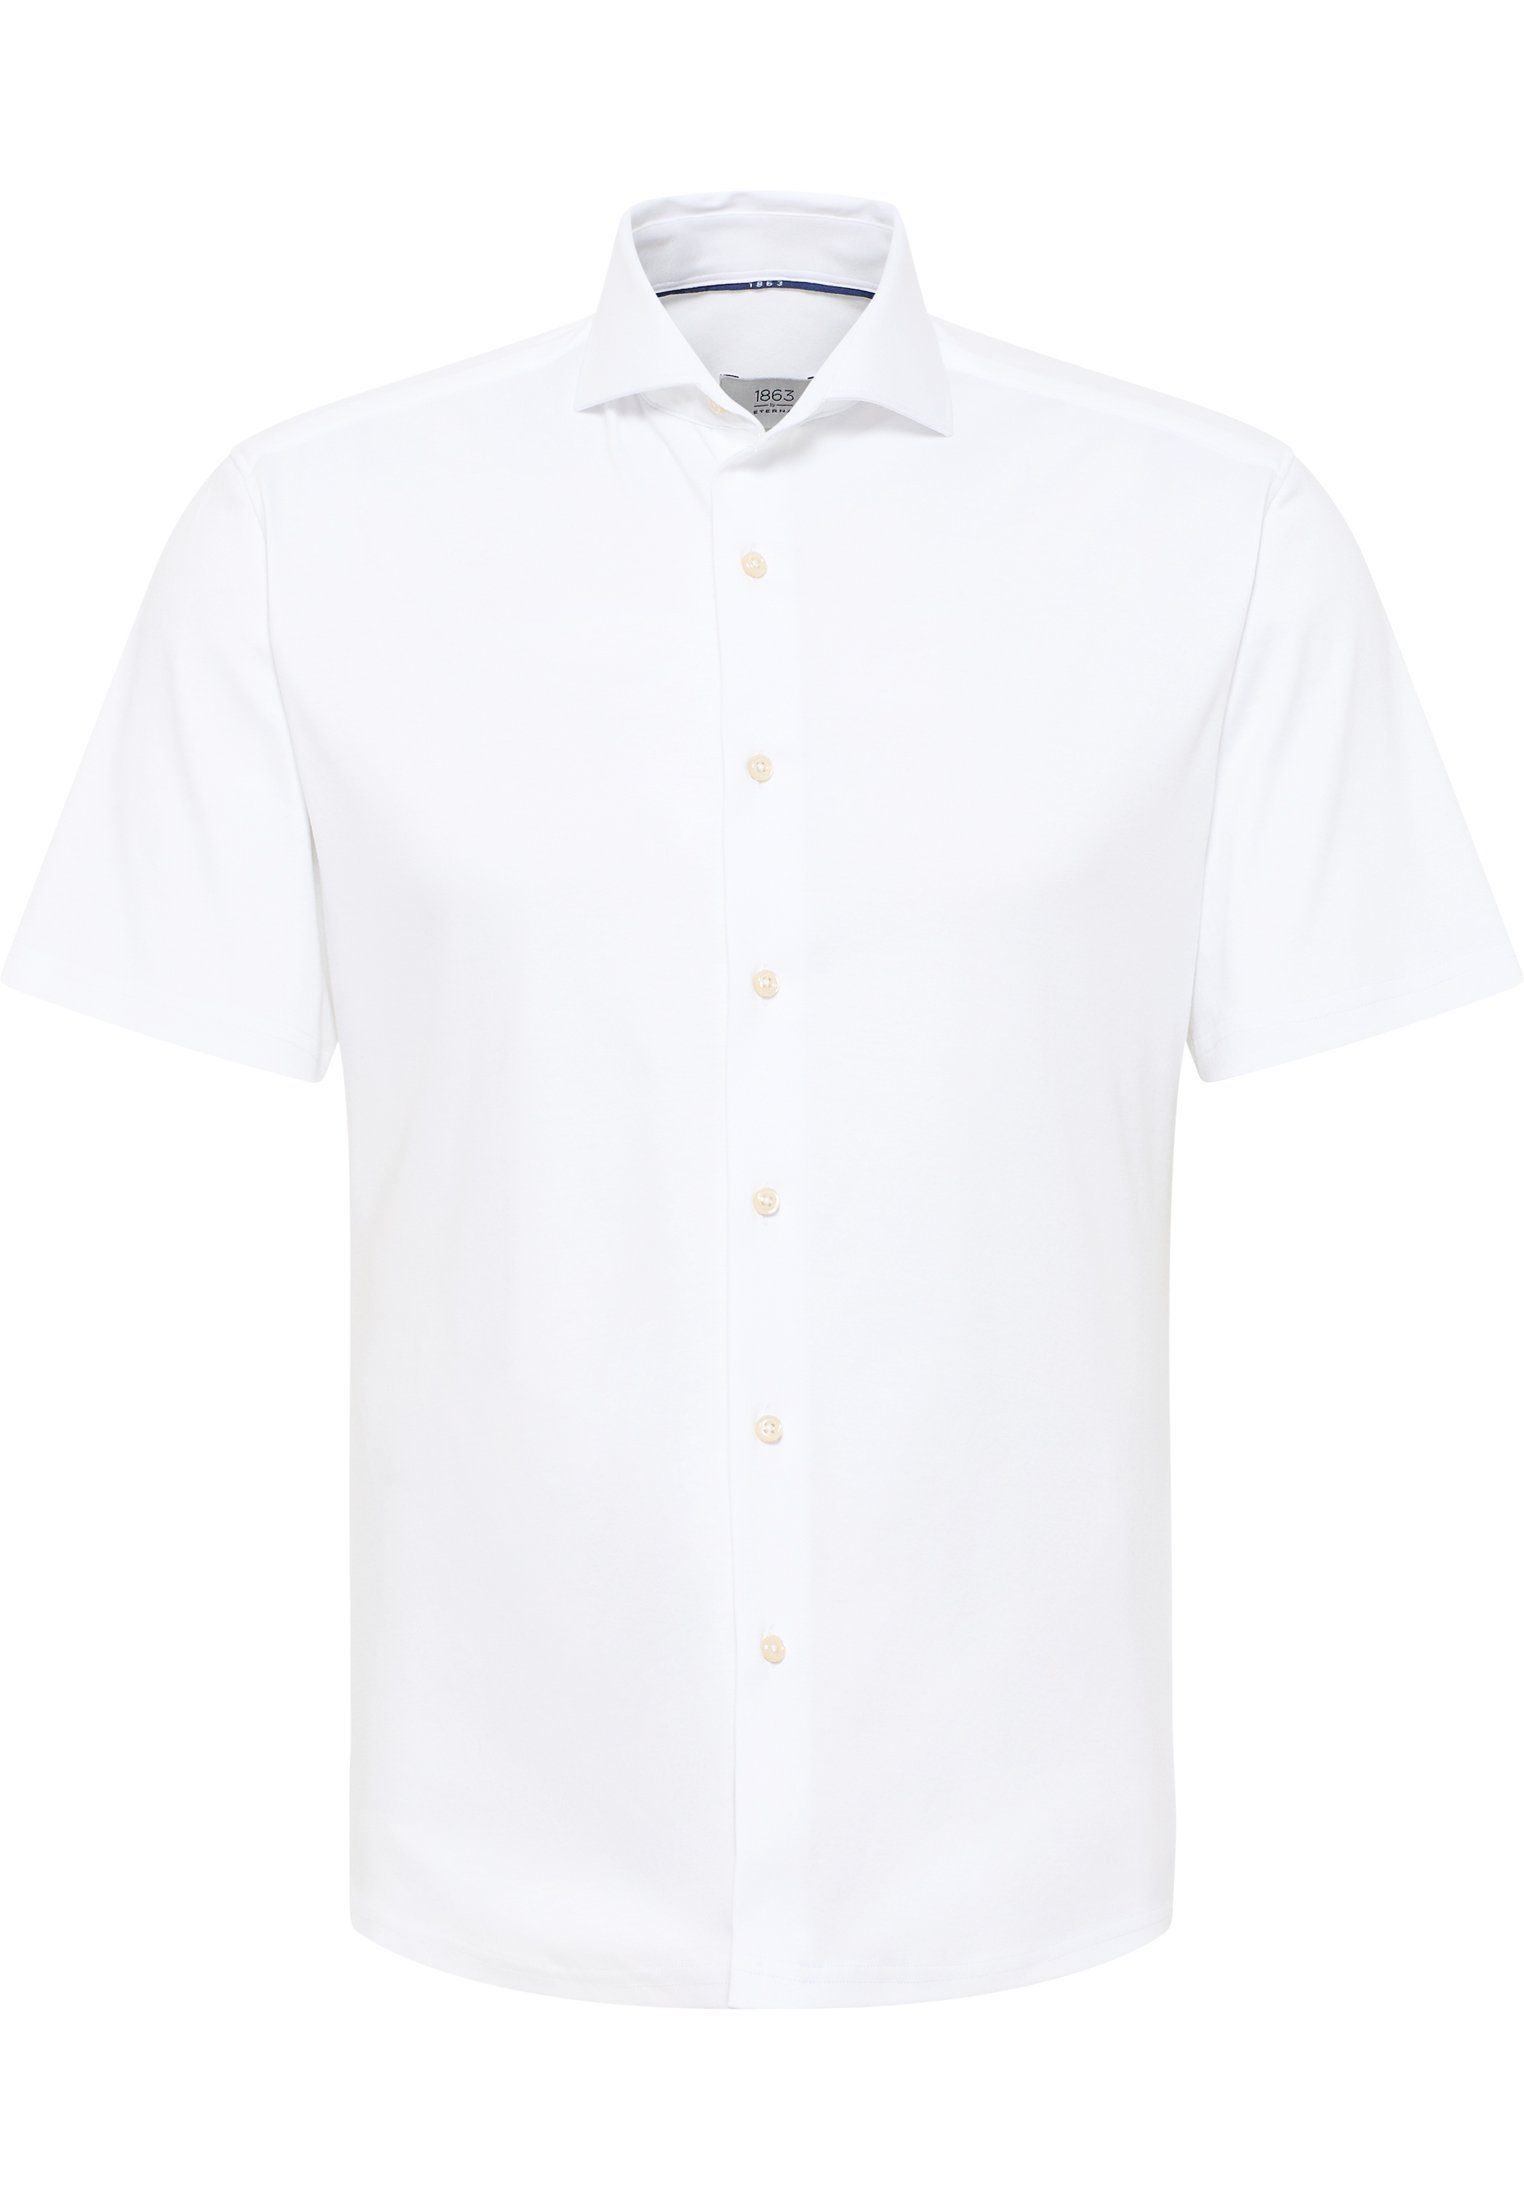 Kurzarm Shirt Weiß Jersey Kurzarmhemd Eterna Jersey